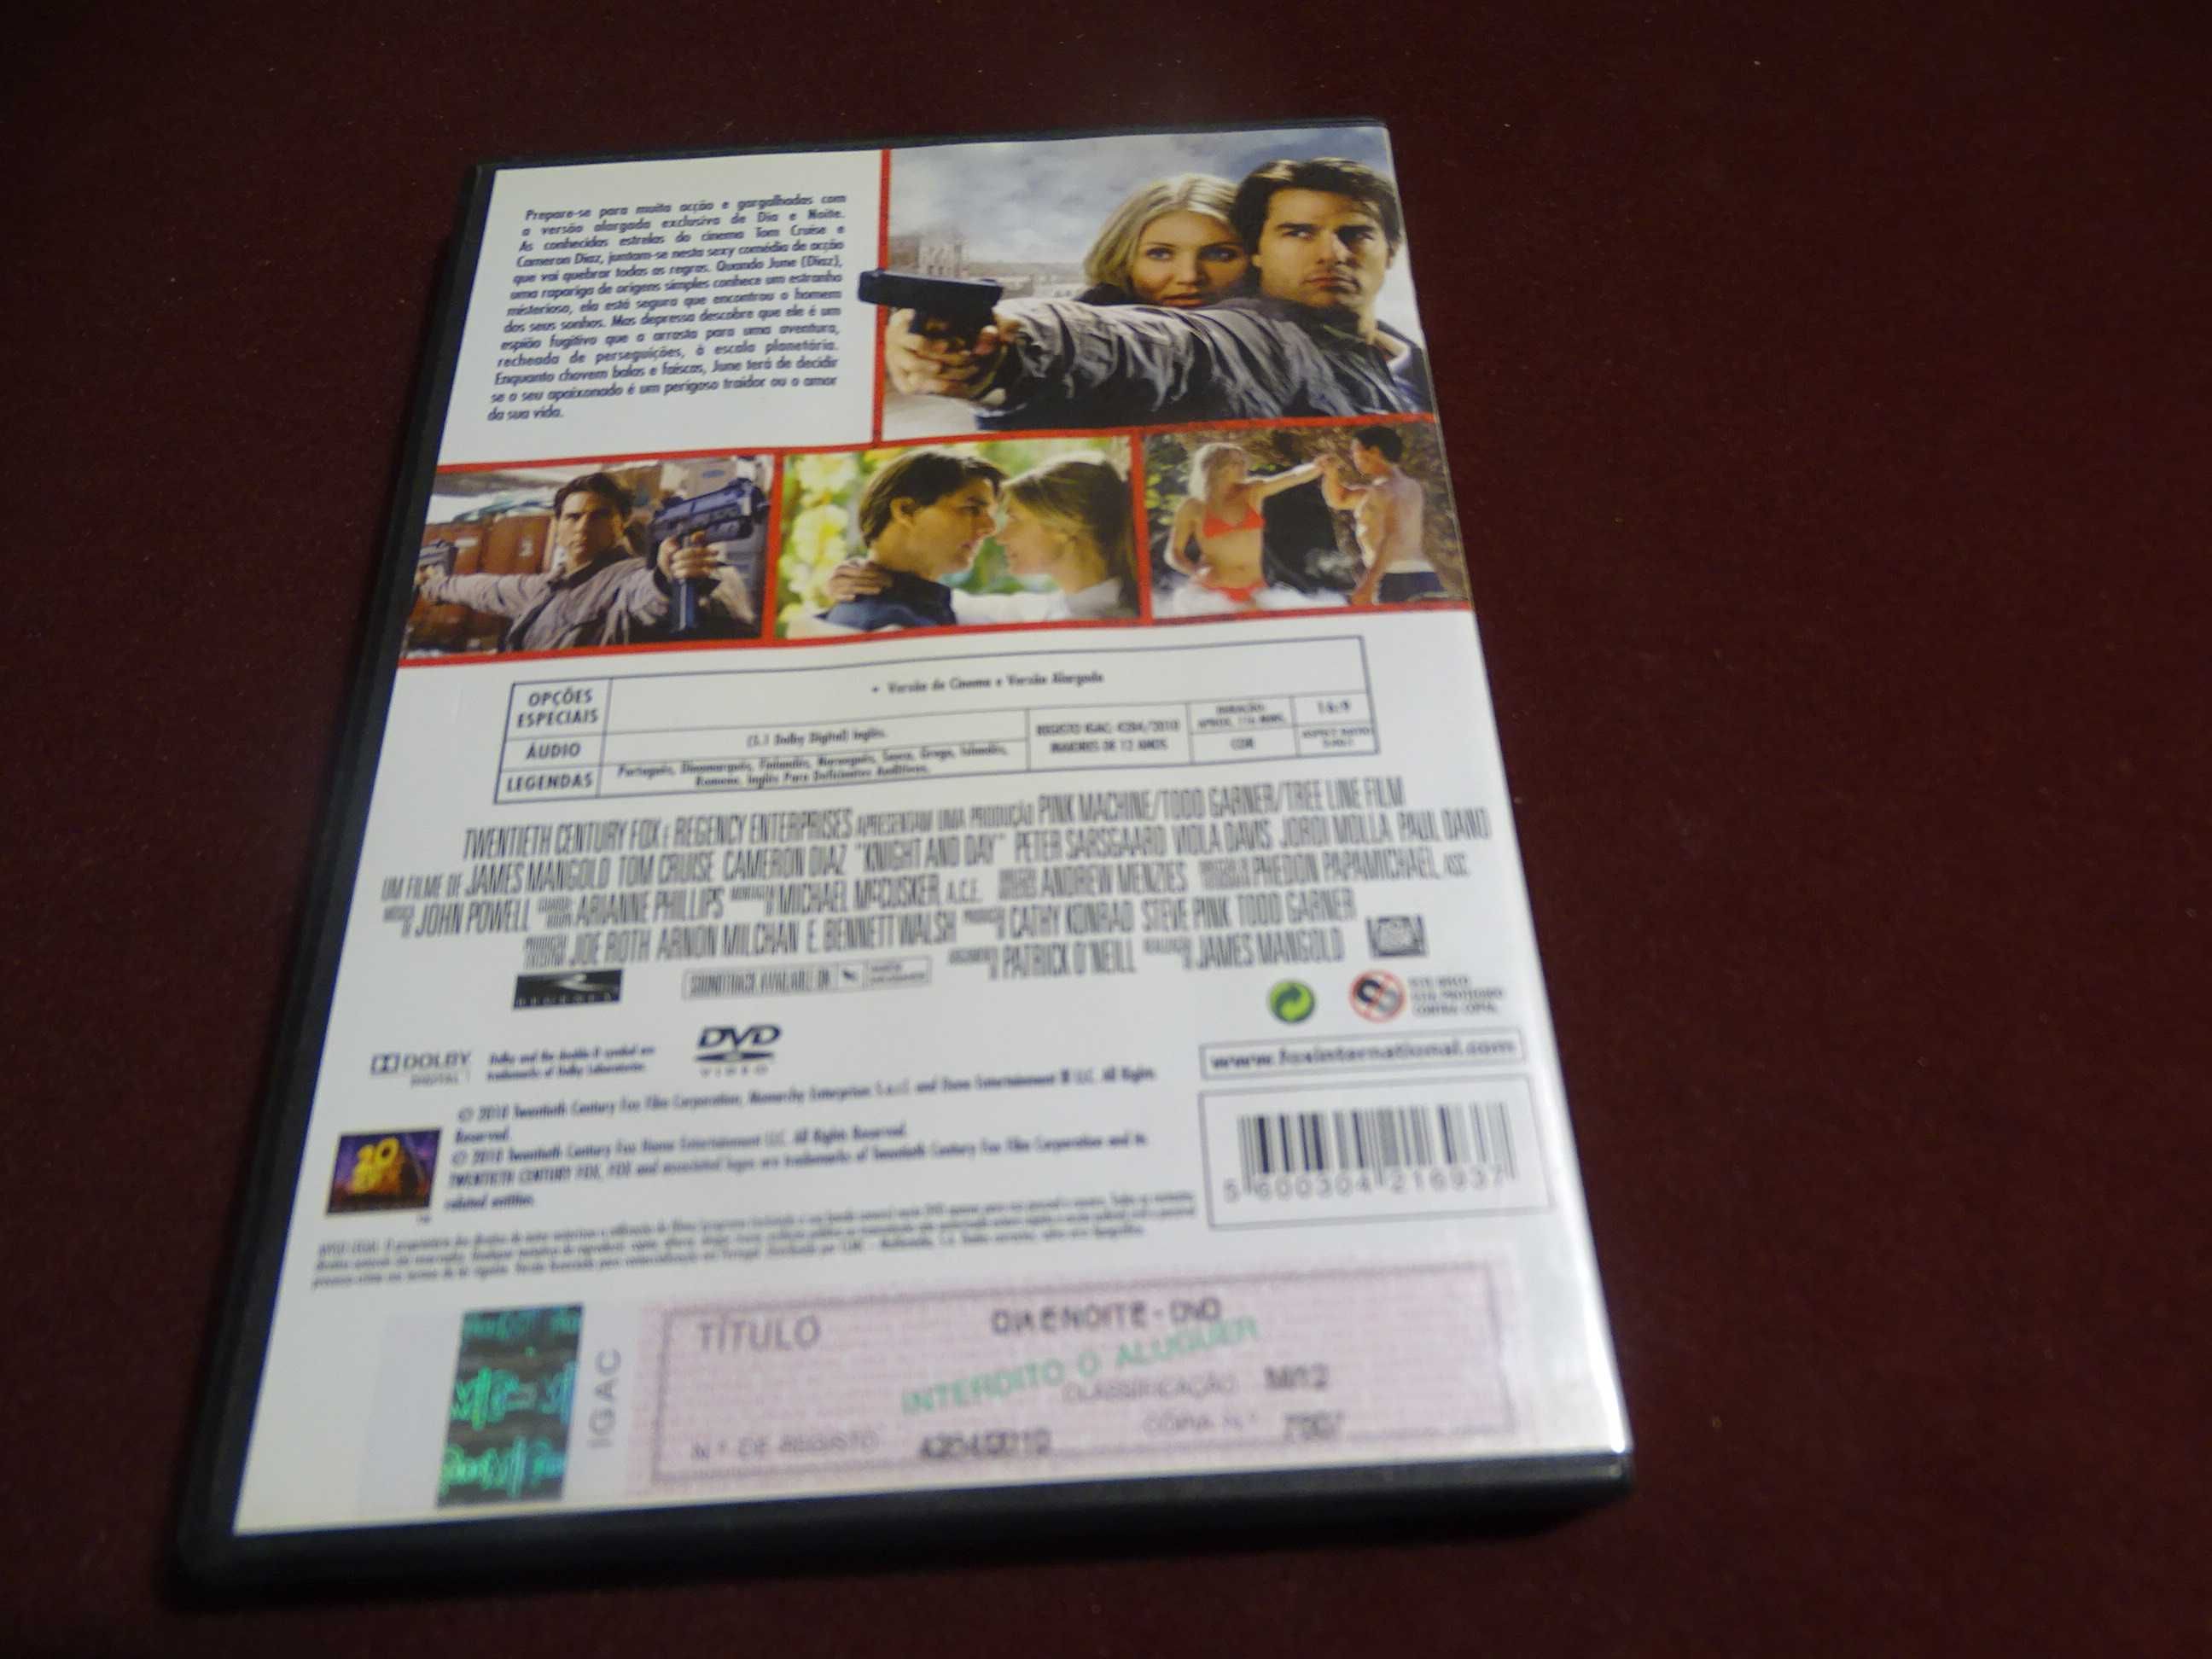 DVD-Dia e noite-Tom Cruise/Cameron Diaz